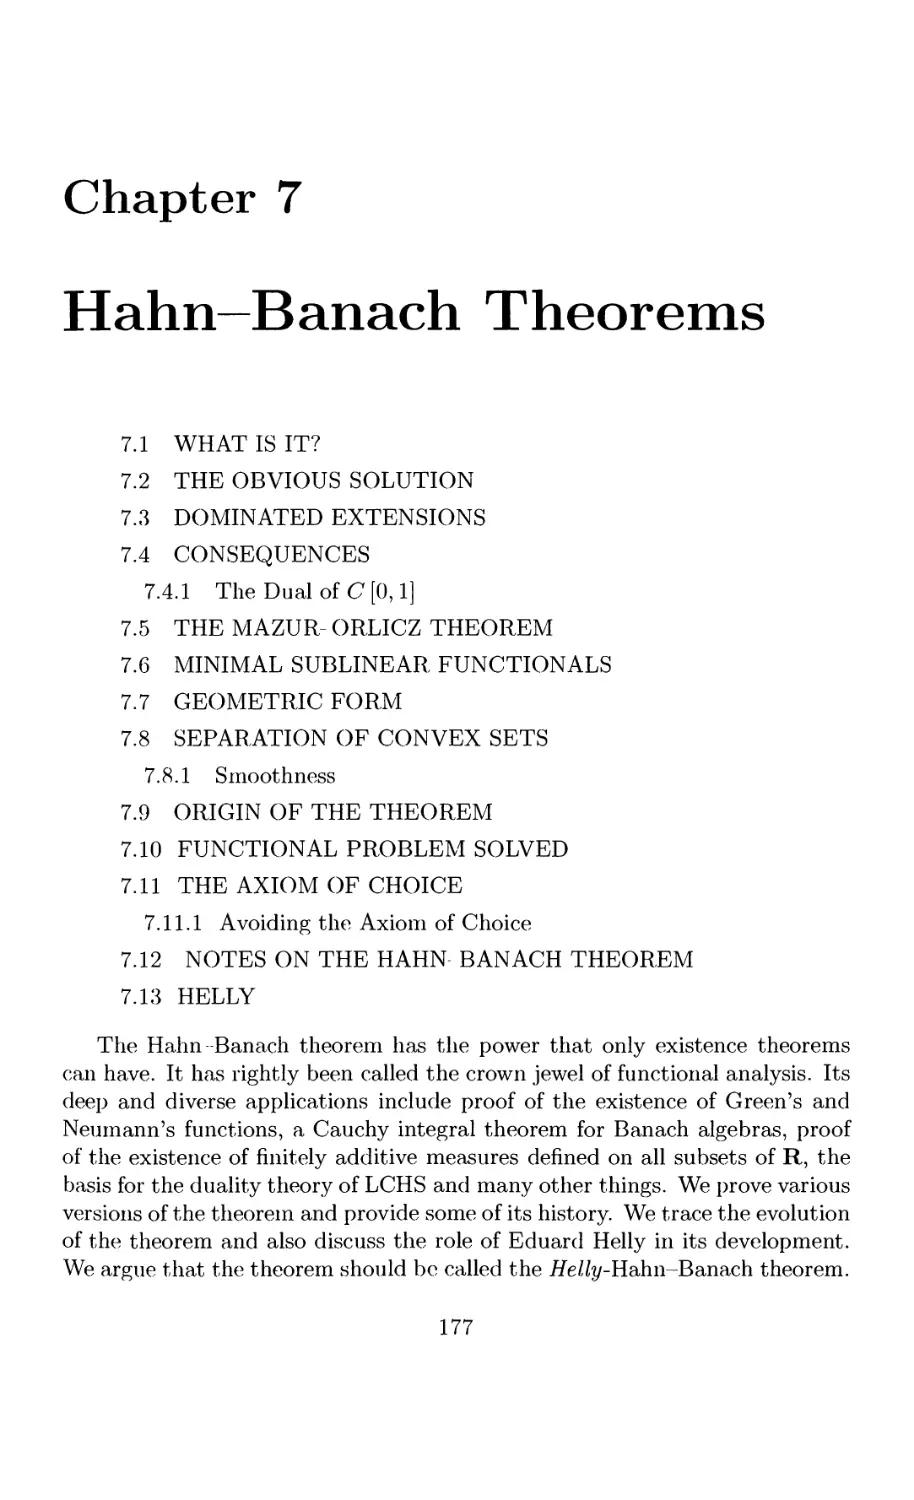 7 Hahn-Banach Theorems